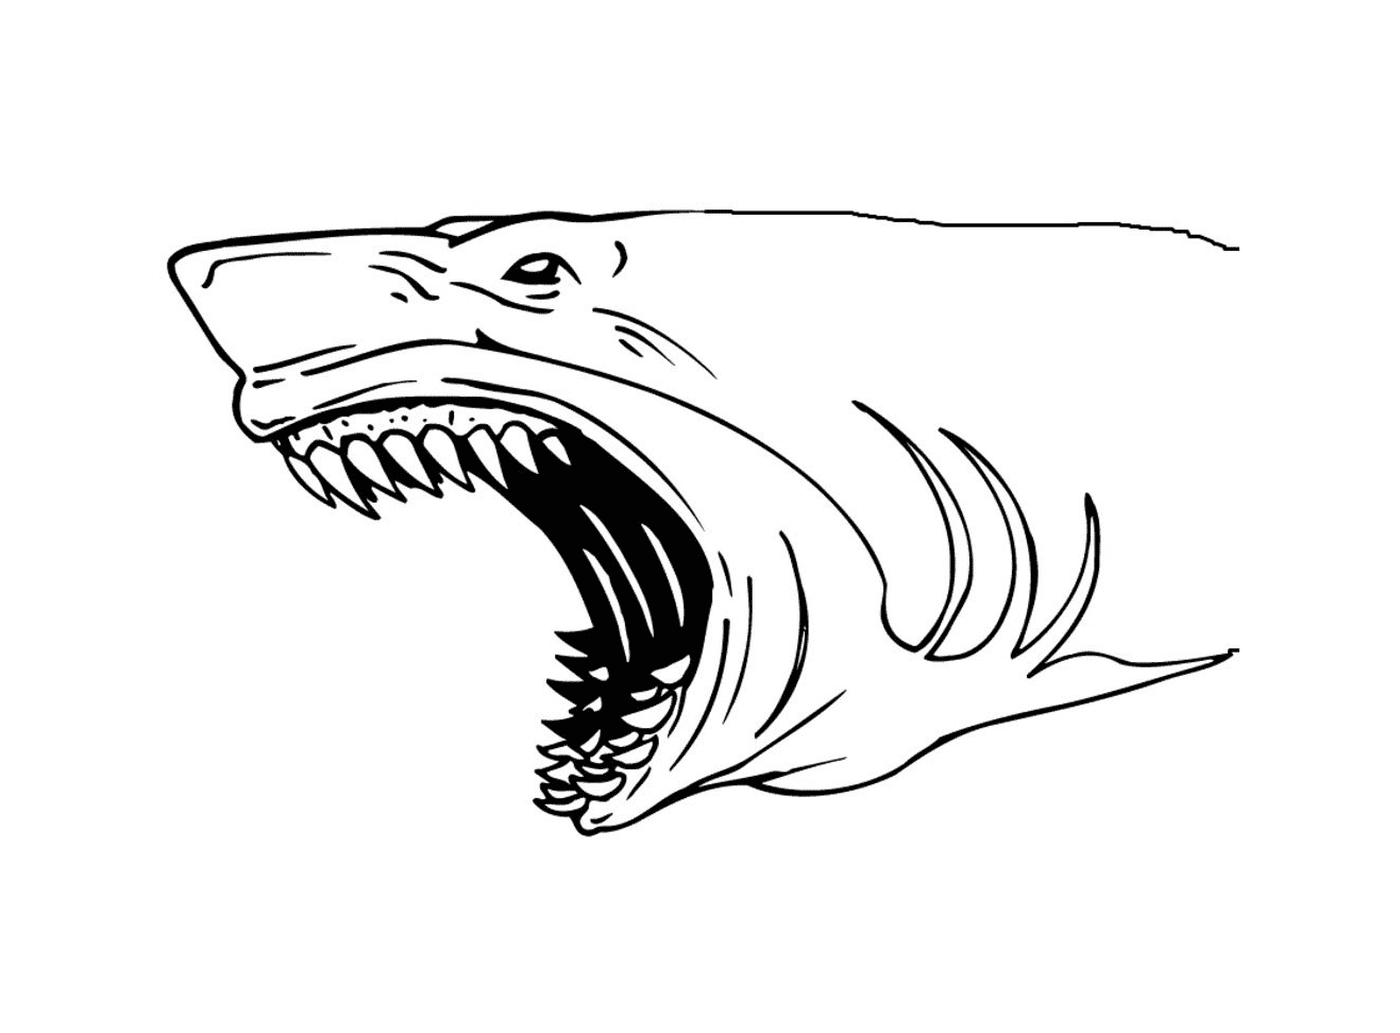  Tiburón con dientes grandes 